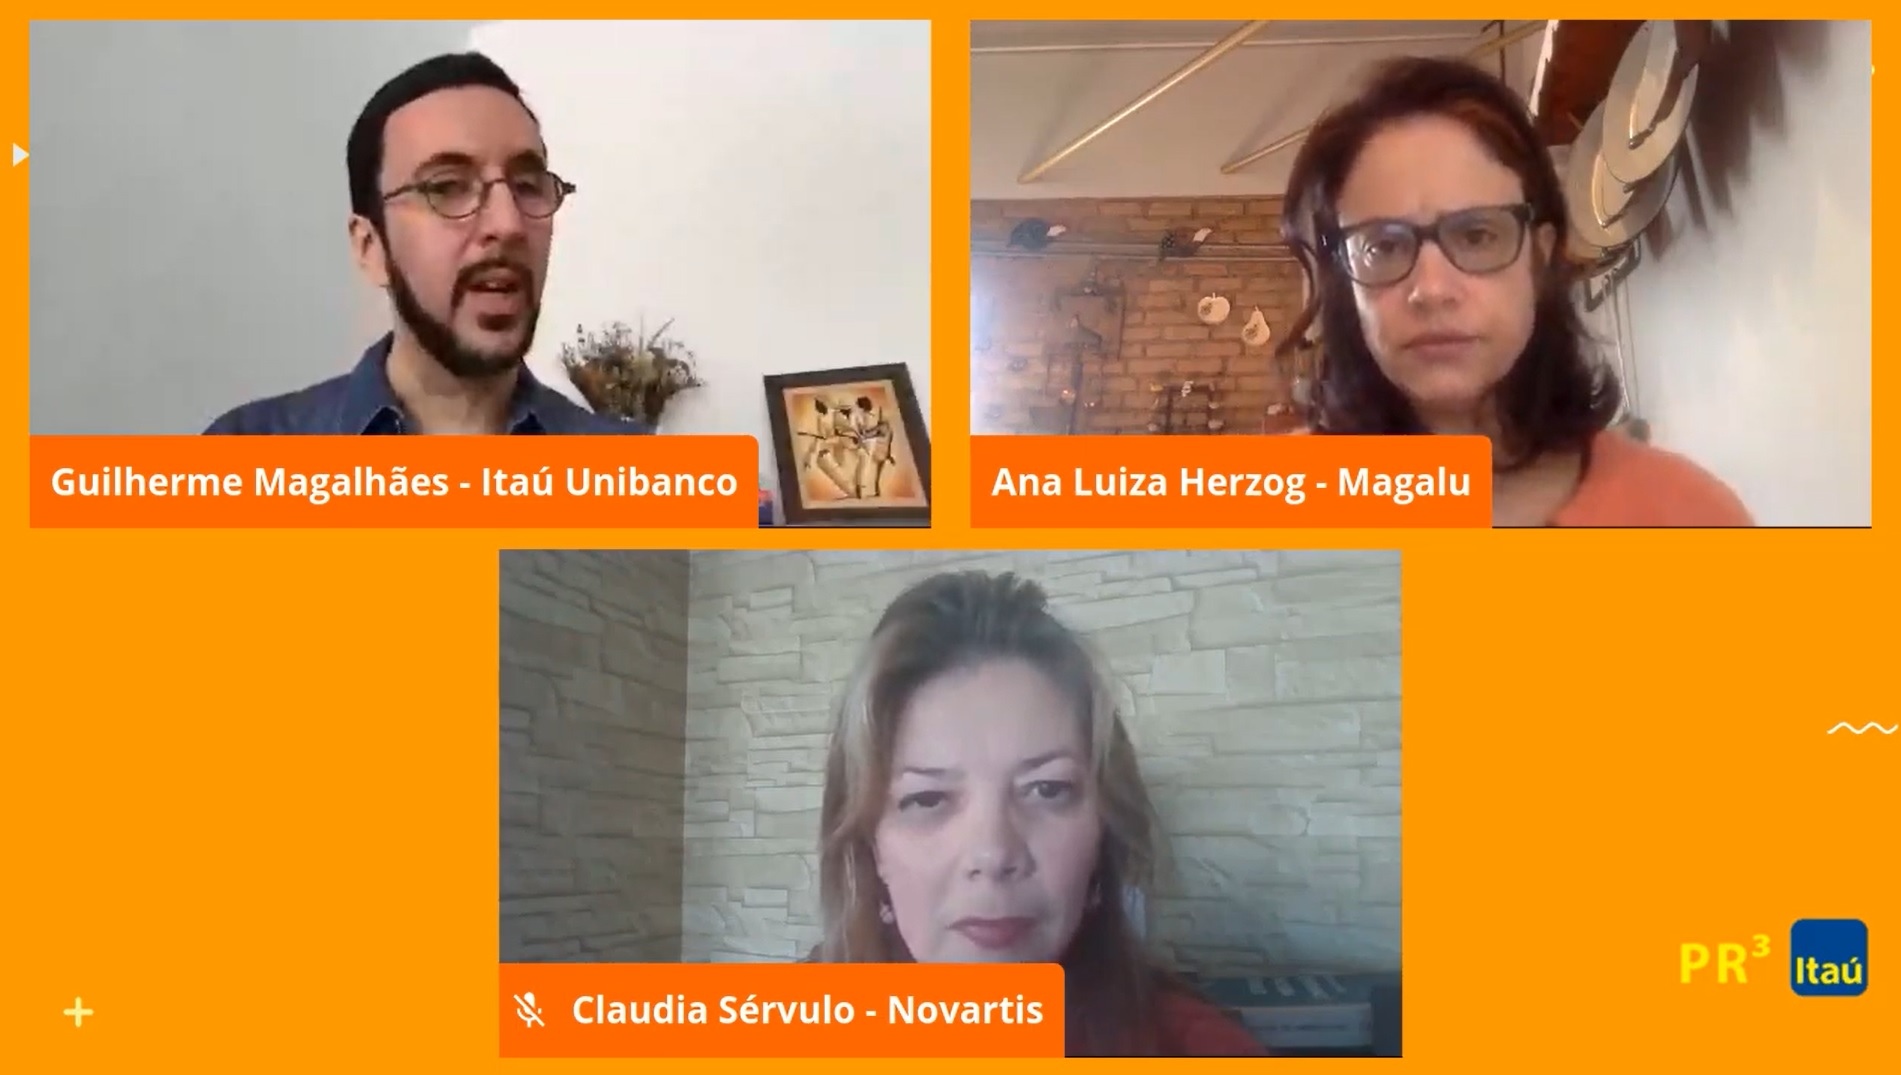 Especialistas em comunicação do Itaú, Magalu e Novartis falam sobre comunicação em tempos de pandemia